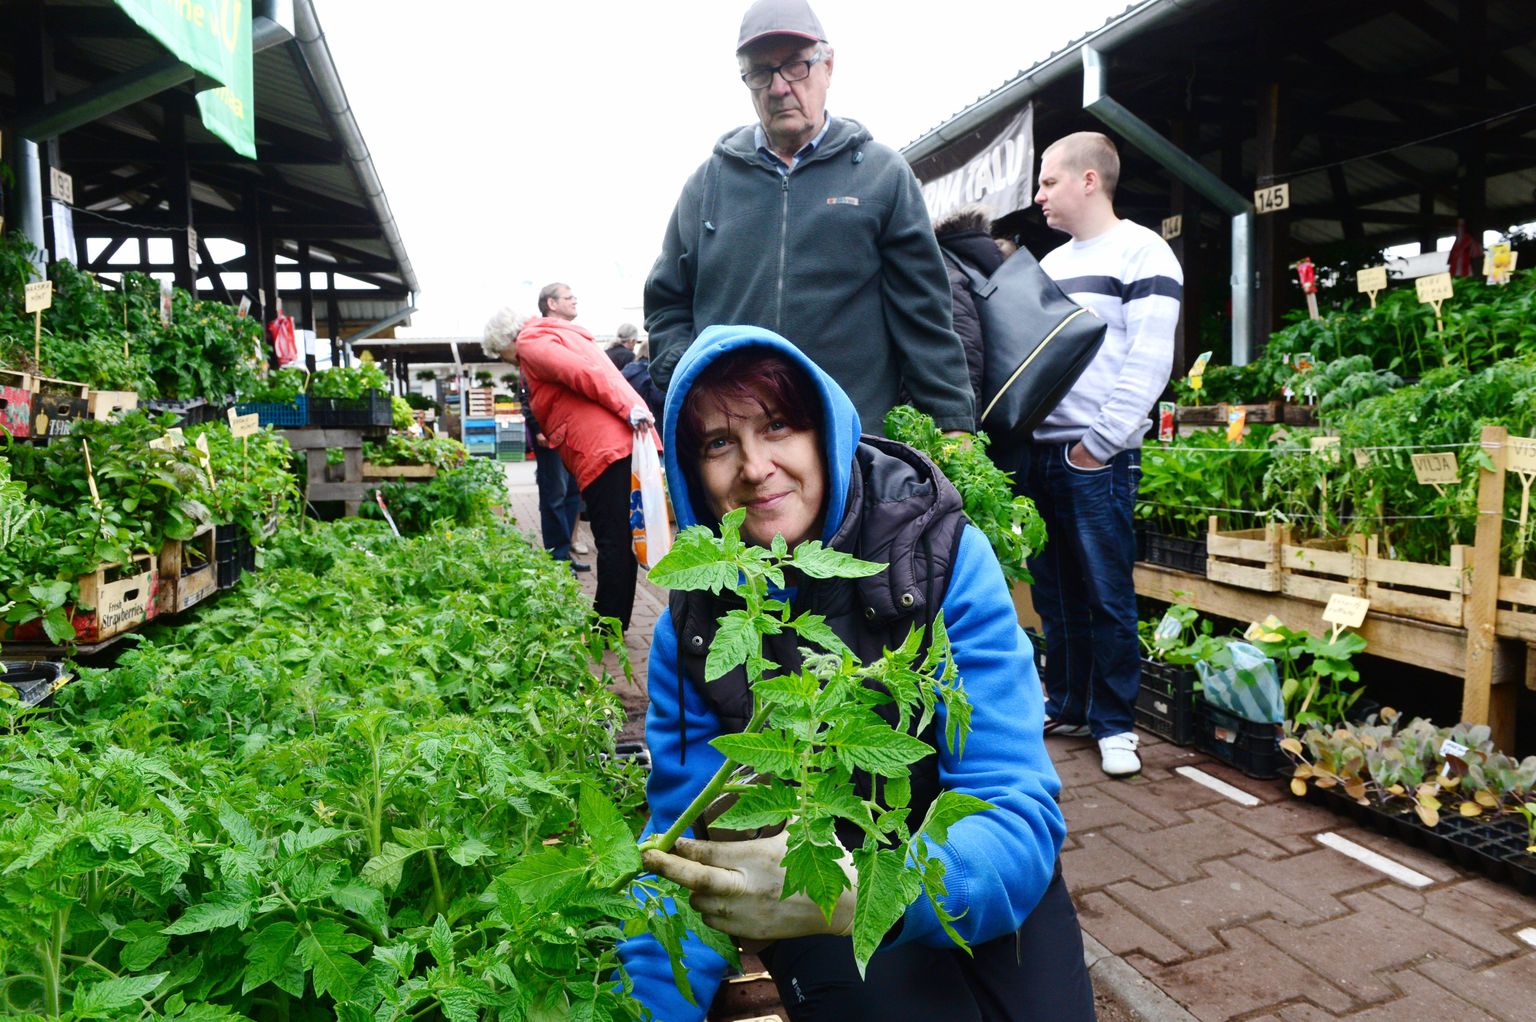 Kuusiku talu perenaine Maret Kivi on Tartu avaturule kaasa võtnud tugevad tomatitaimed, mil juba õienupudki küljes, ning loodab, et enamik neist ka algaval nädalavahetusel kaubaks läheb.